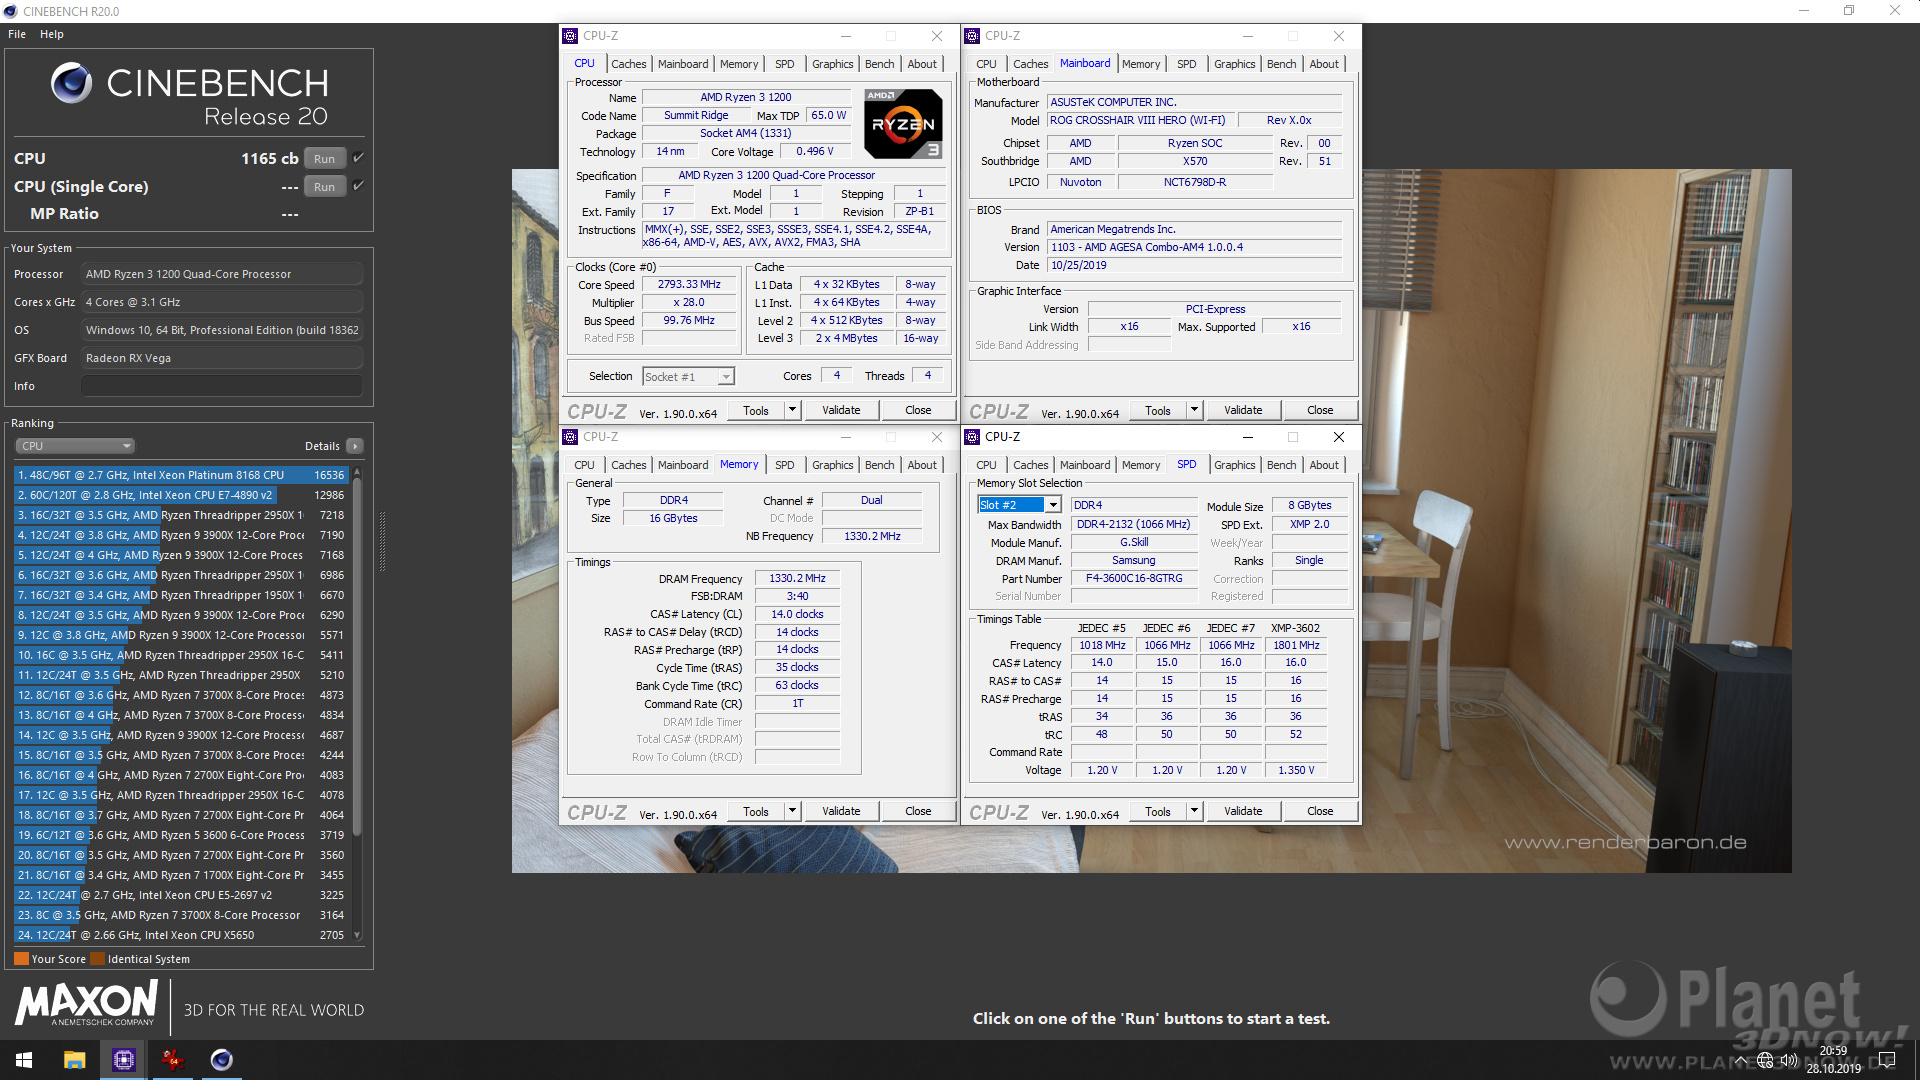 X570-Mainboard mit AMD Ryzen 3 1200 und AGESA 1.0.04b